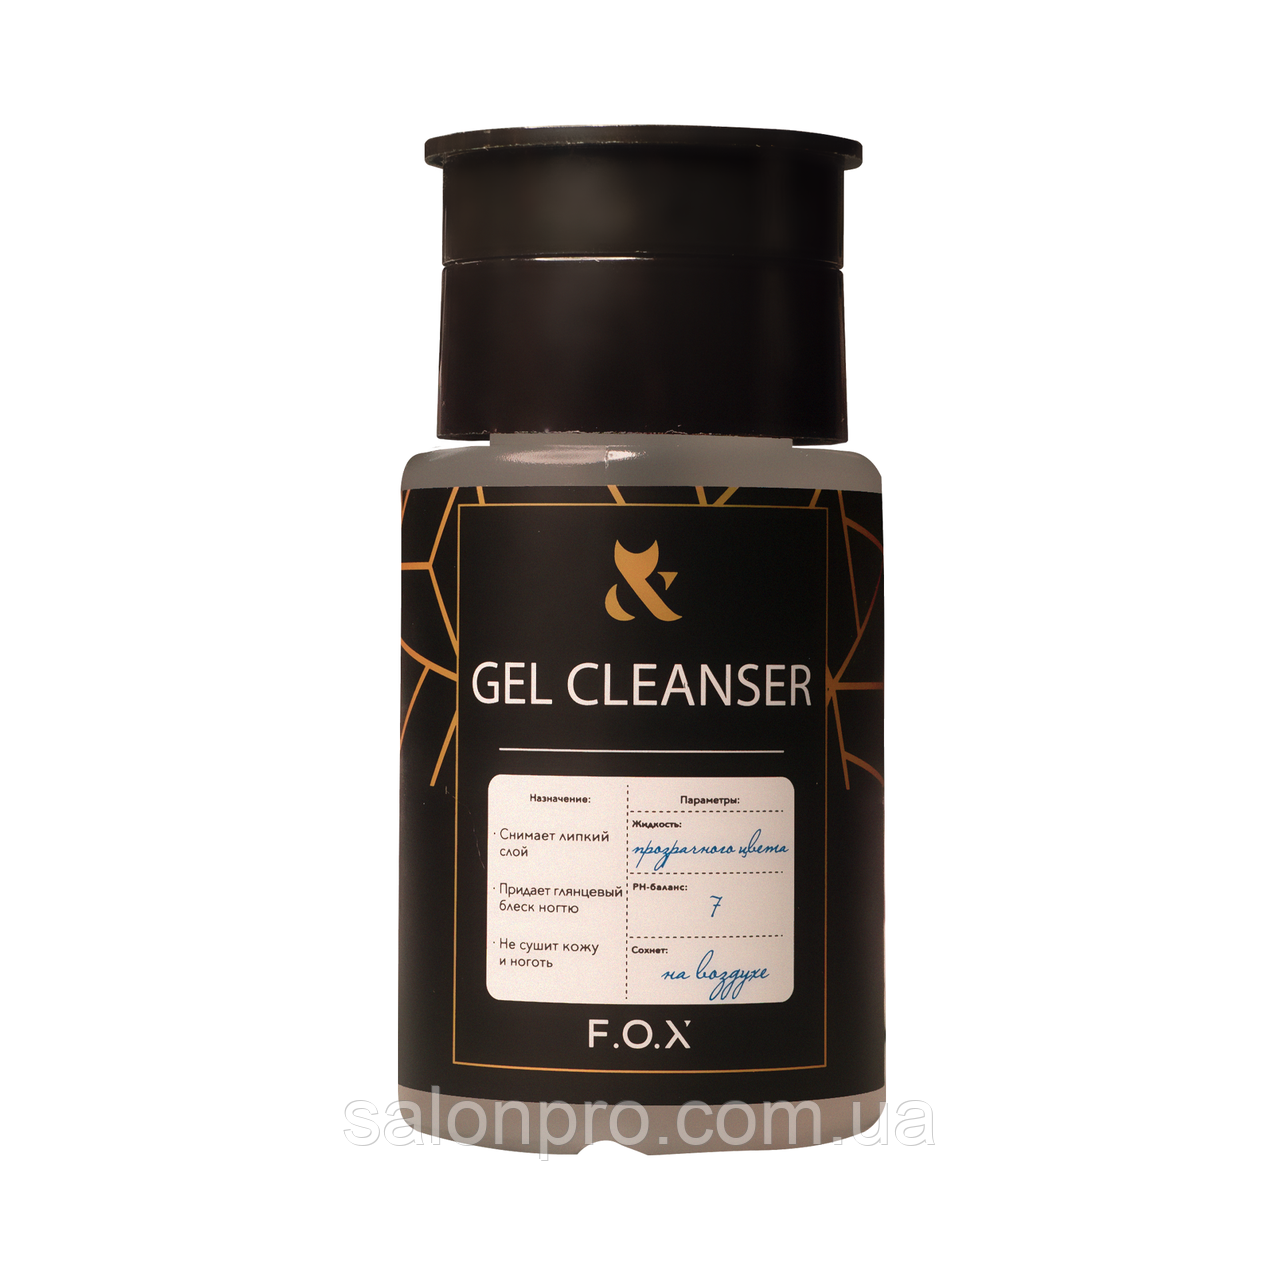 FOX Cleanser — засіб для видалення дисперсійного (липкого) шару, помпа 80 мл